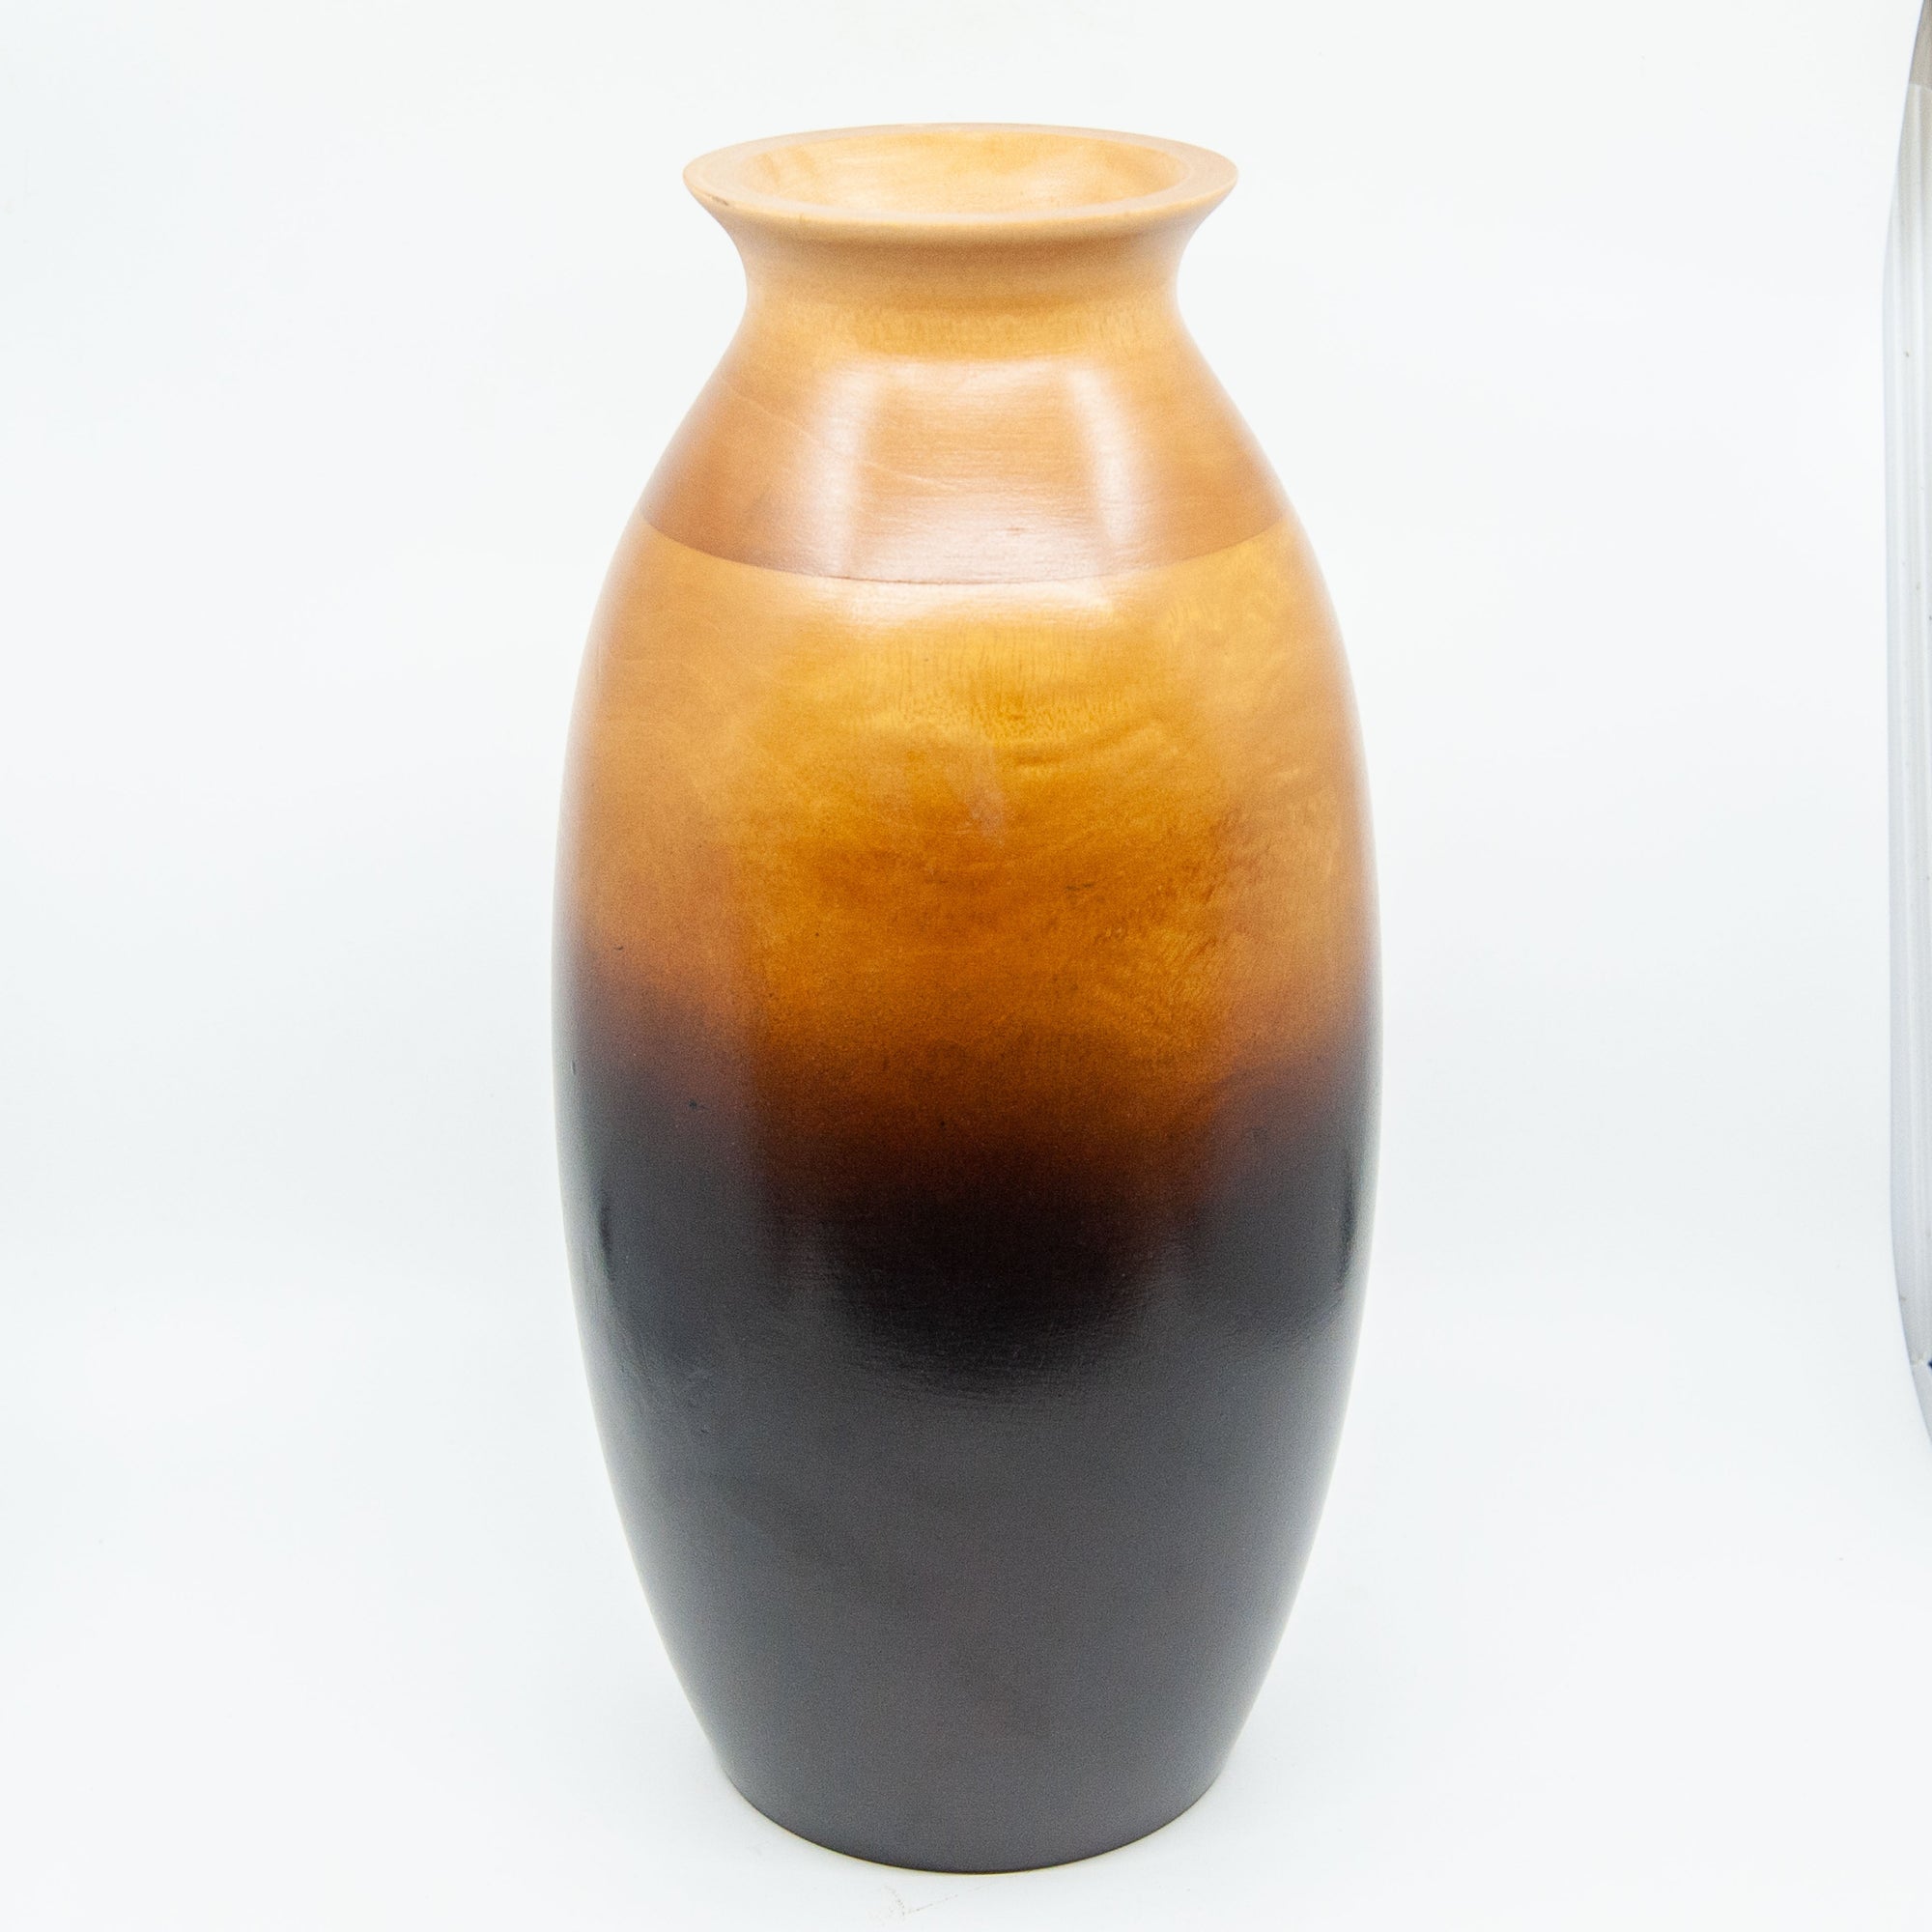 Mango Wood Large Oval Vase - 14" (Ombre)